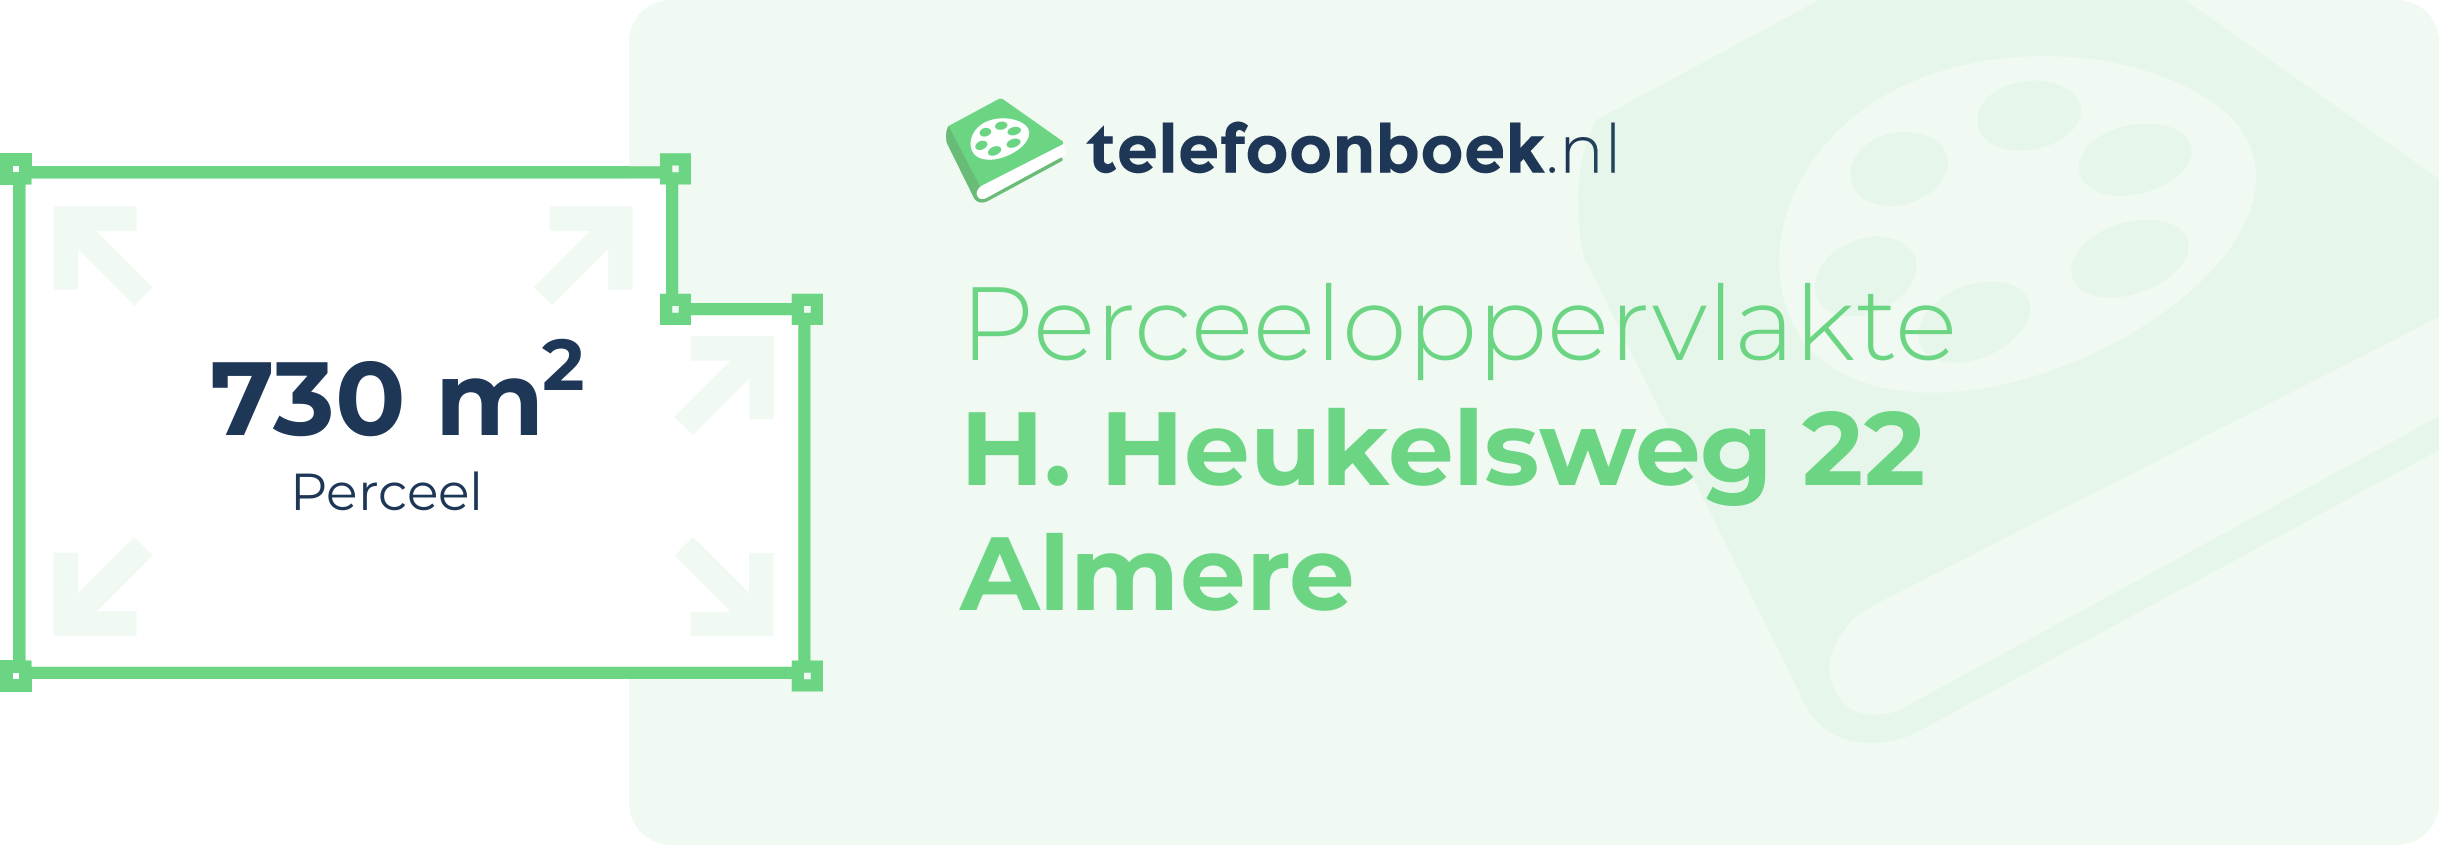 Perceeloppervlakte H. Heukelsweg 22 Almere